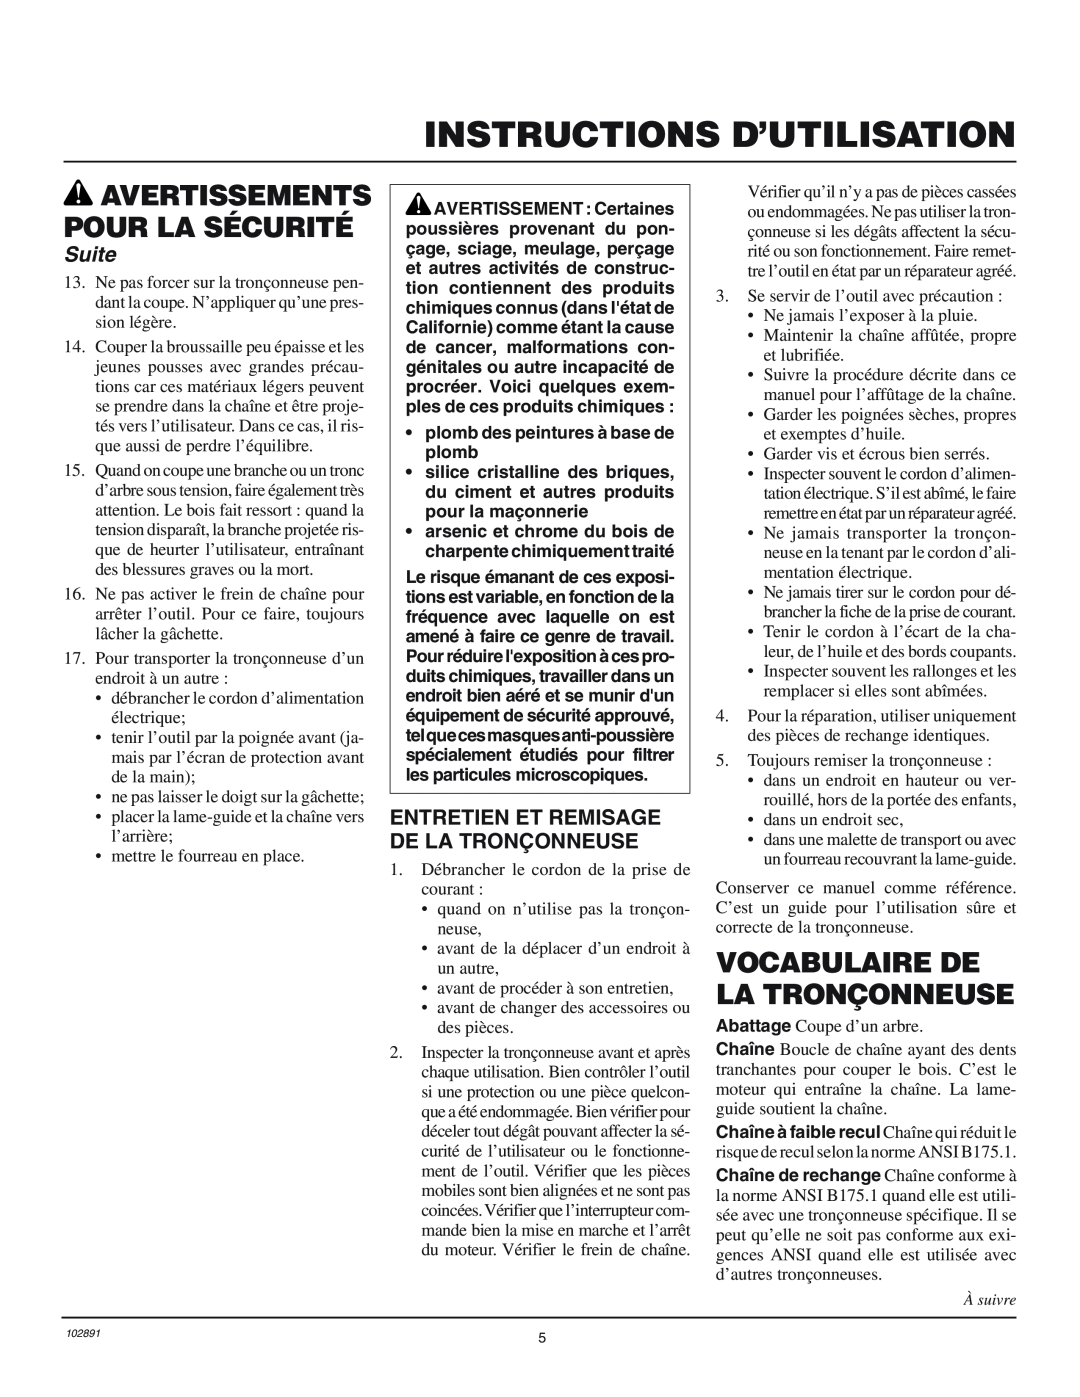 Desa 100271-01 Vocabulaire De La Tronçonneuse, Entretien Et Remisage De La Tronçonneuse, Instructions D’Utilisation, Suite 